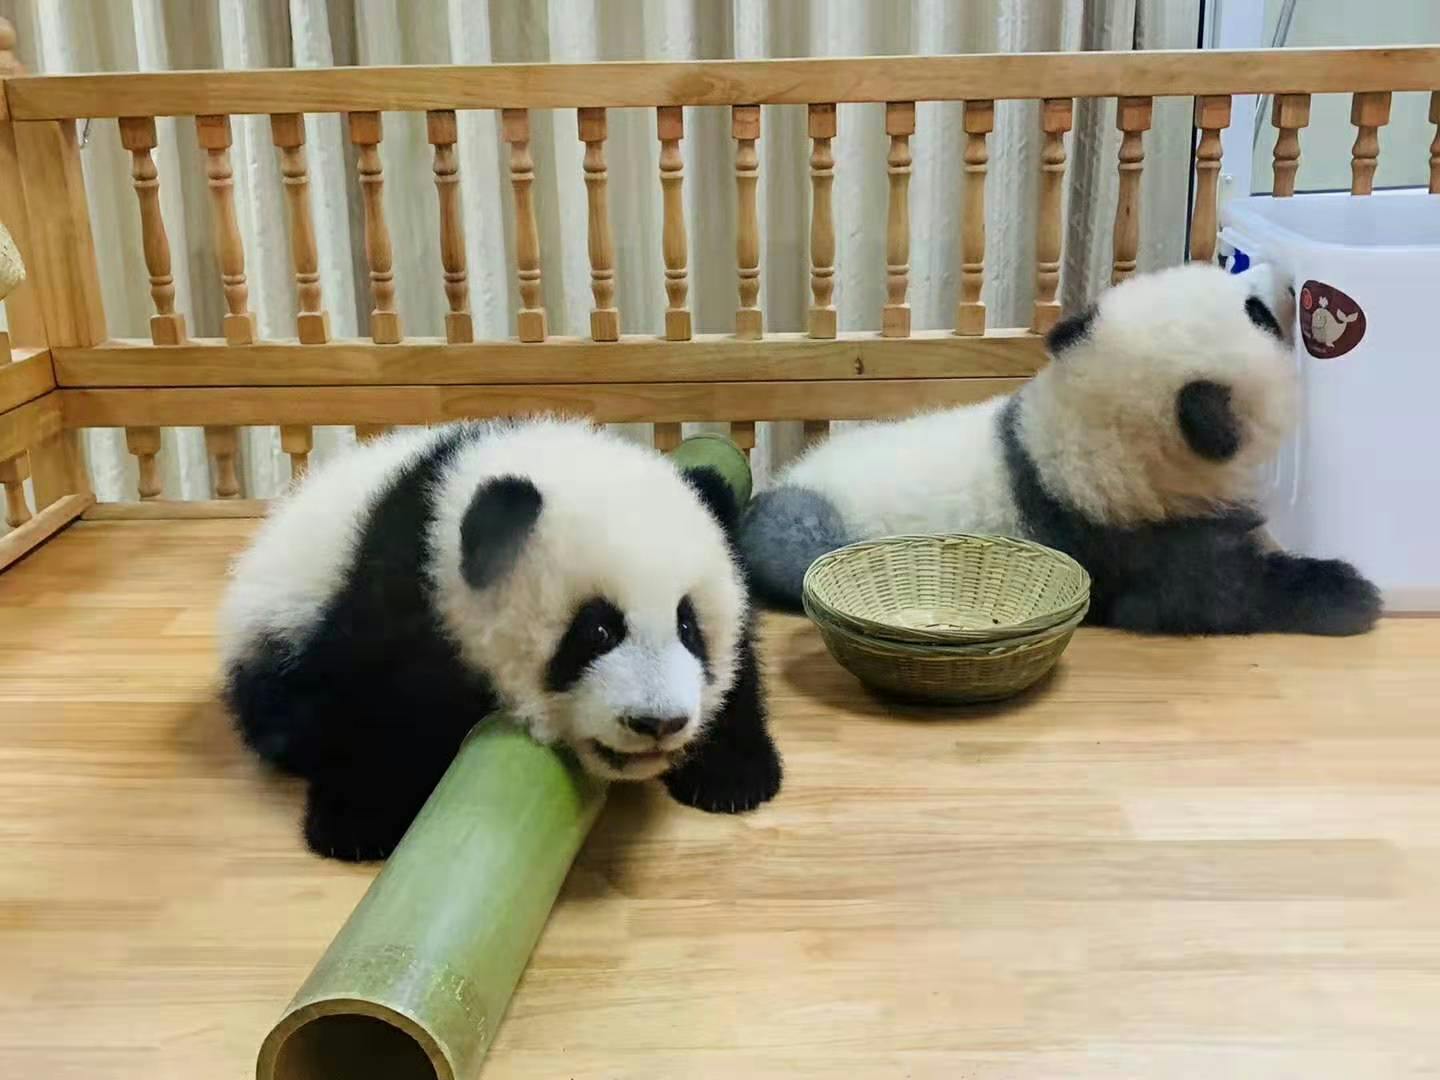 Ganztägige private Tour Panda-Reise und maßgeschneiderte Stadtrundfahrt